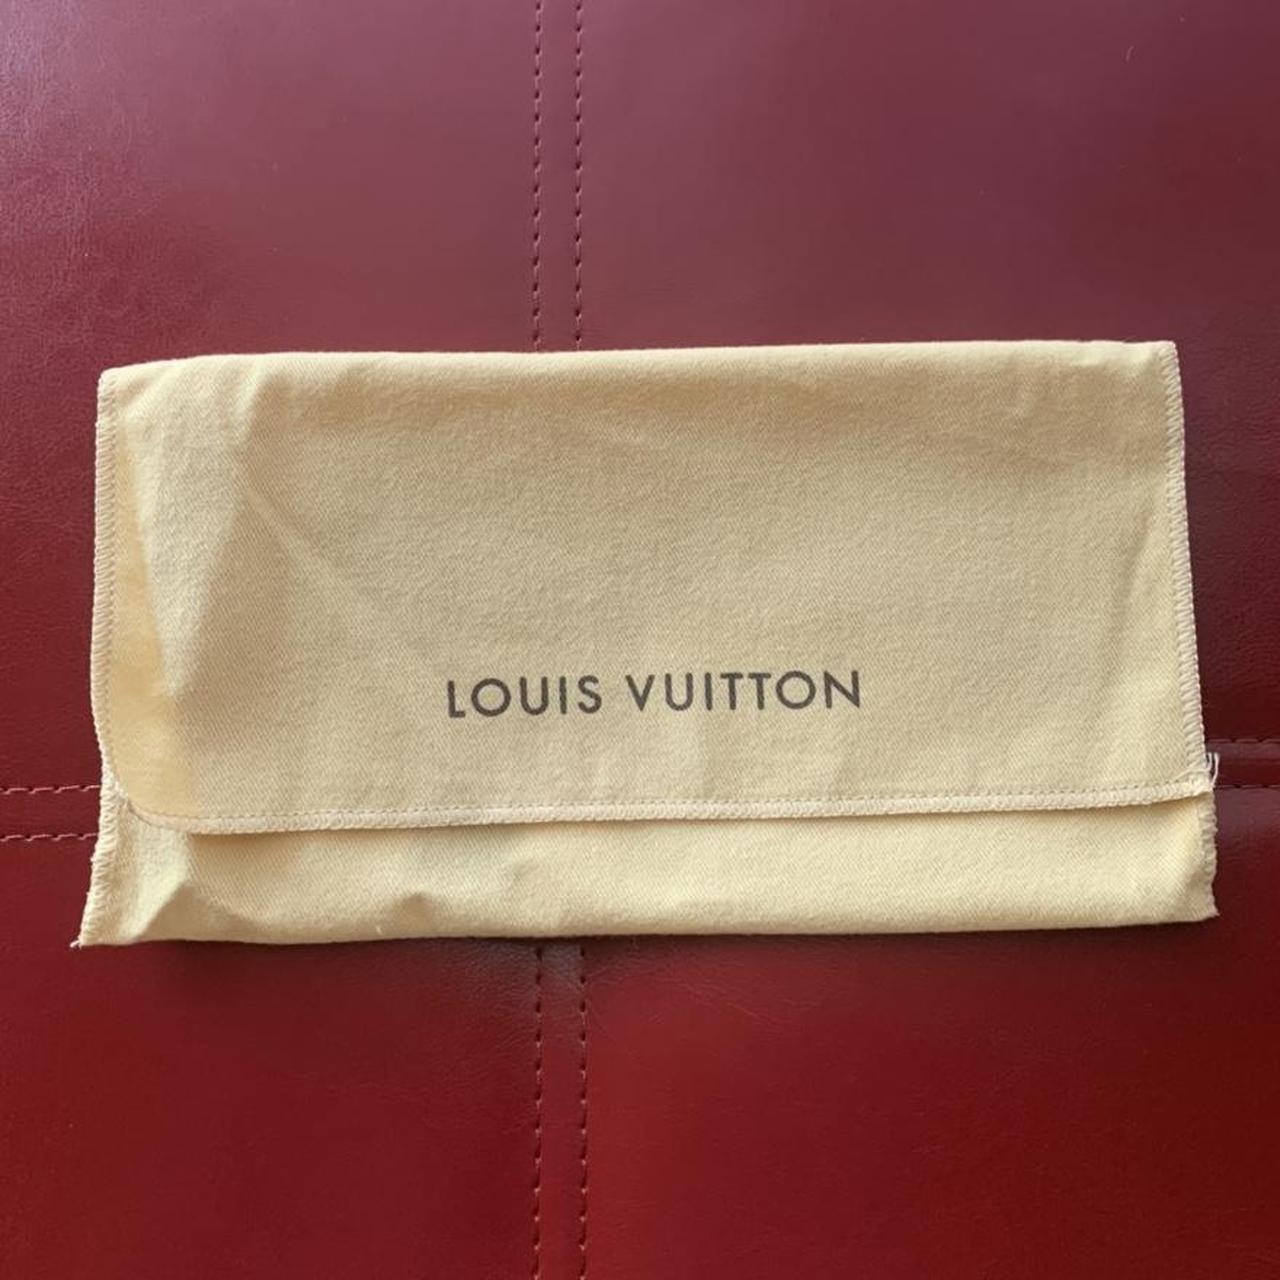 LOUIS VUITTON LITTLE DUST BAG 9in x 4.8in - Depop